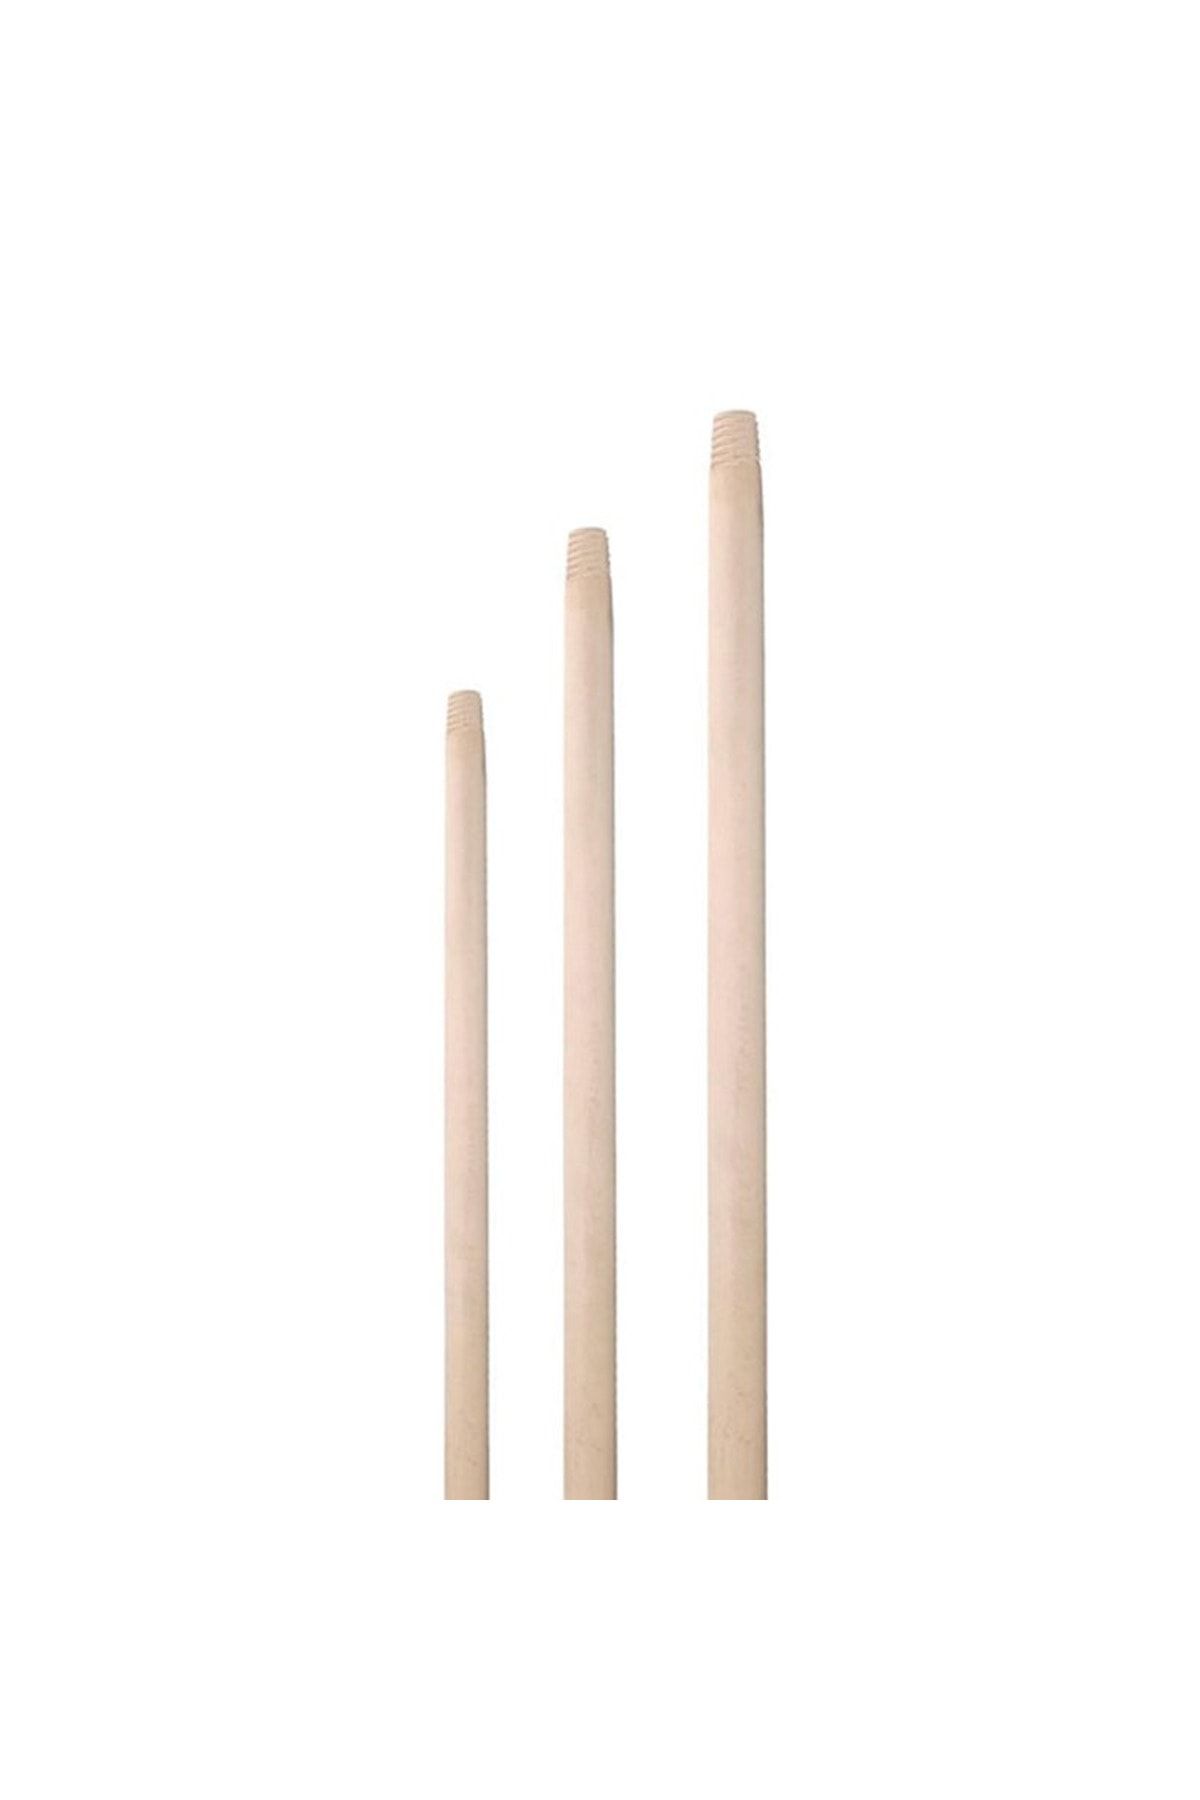 KL HOME Gürgen Ağaç Fırça Sap 150cm- 1 Adet Fiyatı